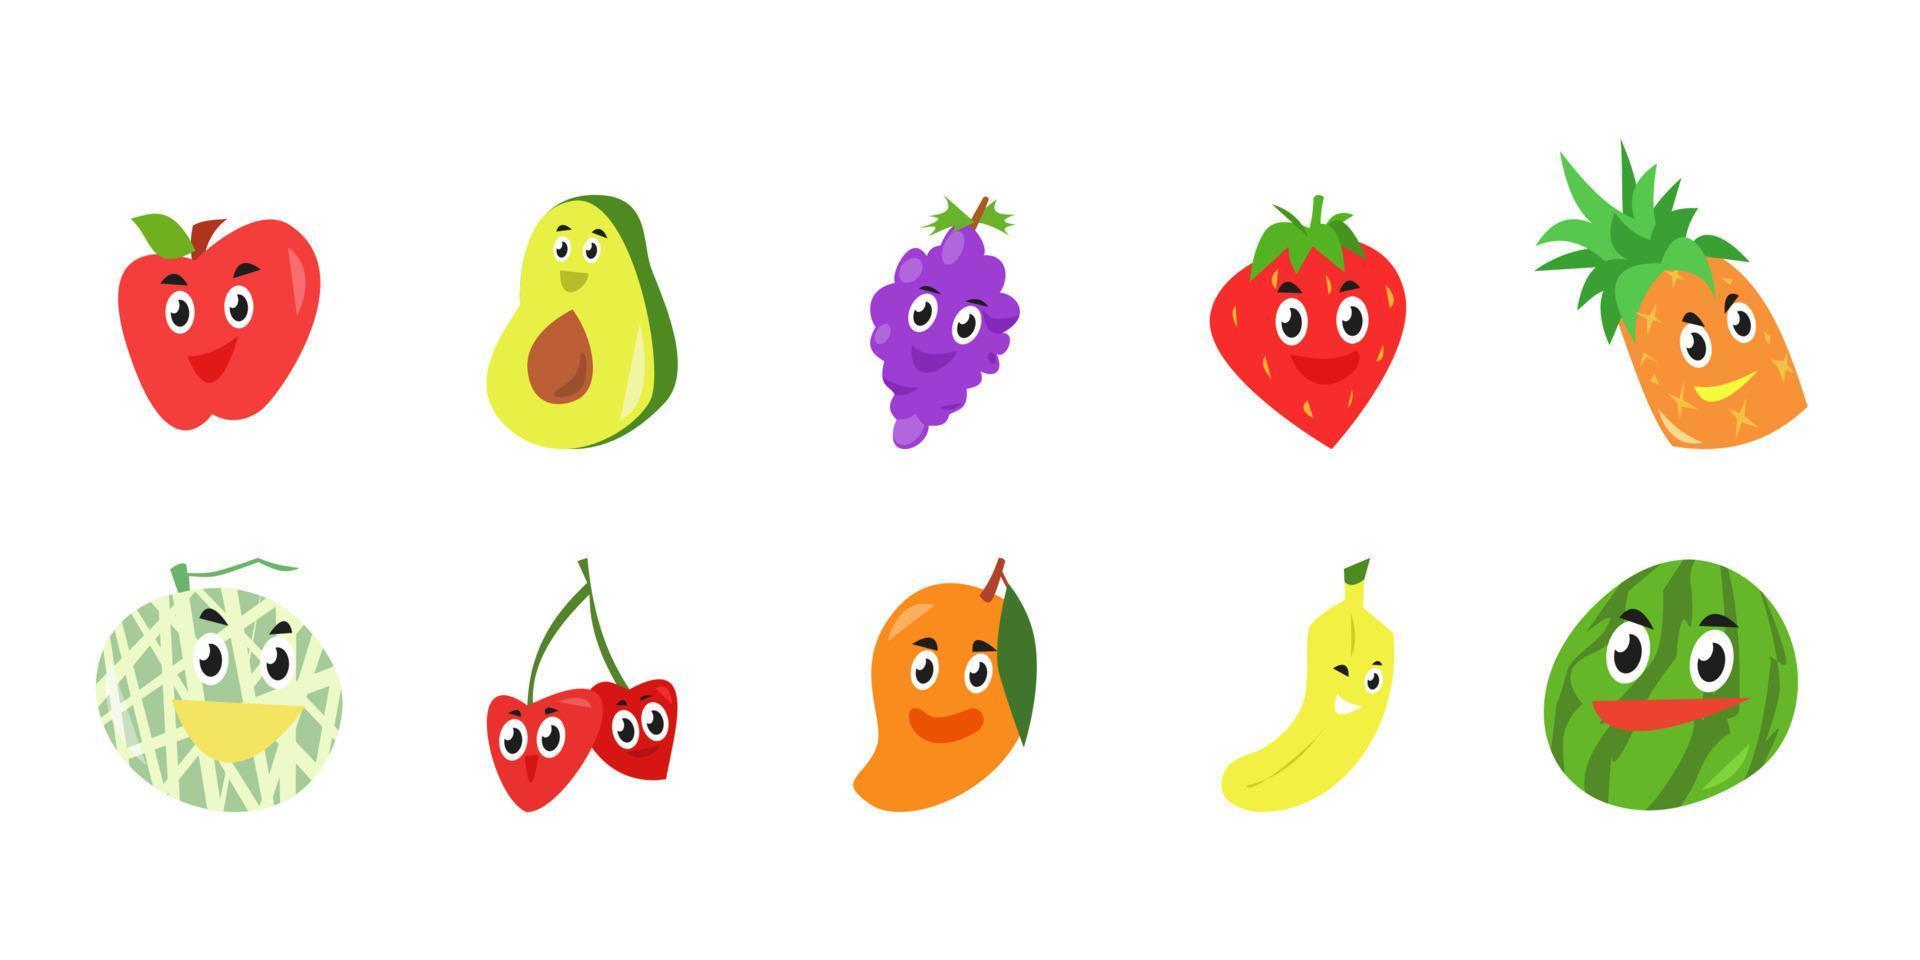 establecer una colección de lindos íconos de personajes de frutas. estilo vectorial de dibujos animados. Fondo blanco. concepto de fruta, comida, adecuado para la ilustración de libros infantiles, plantilla, patrón, mascota, pegatina, etc. vector